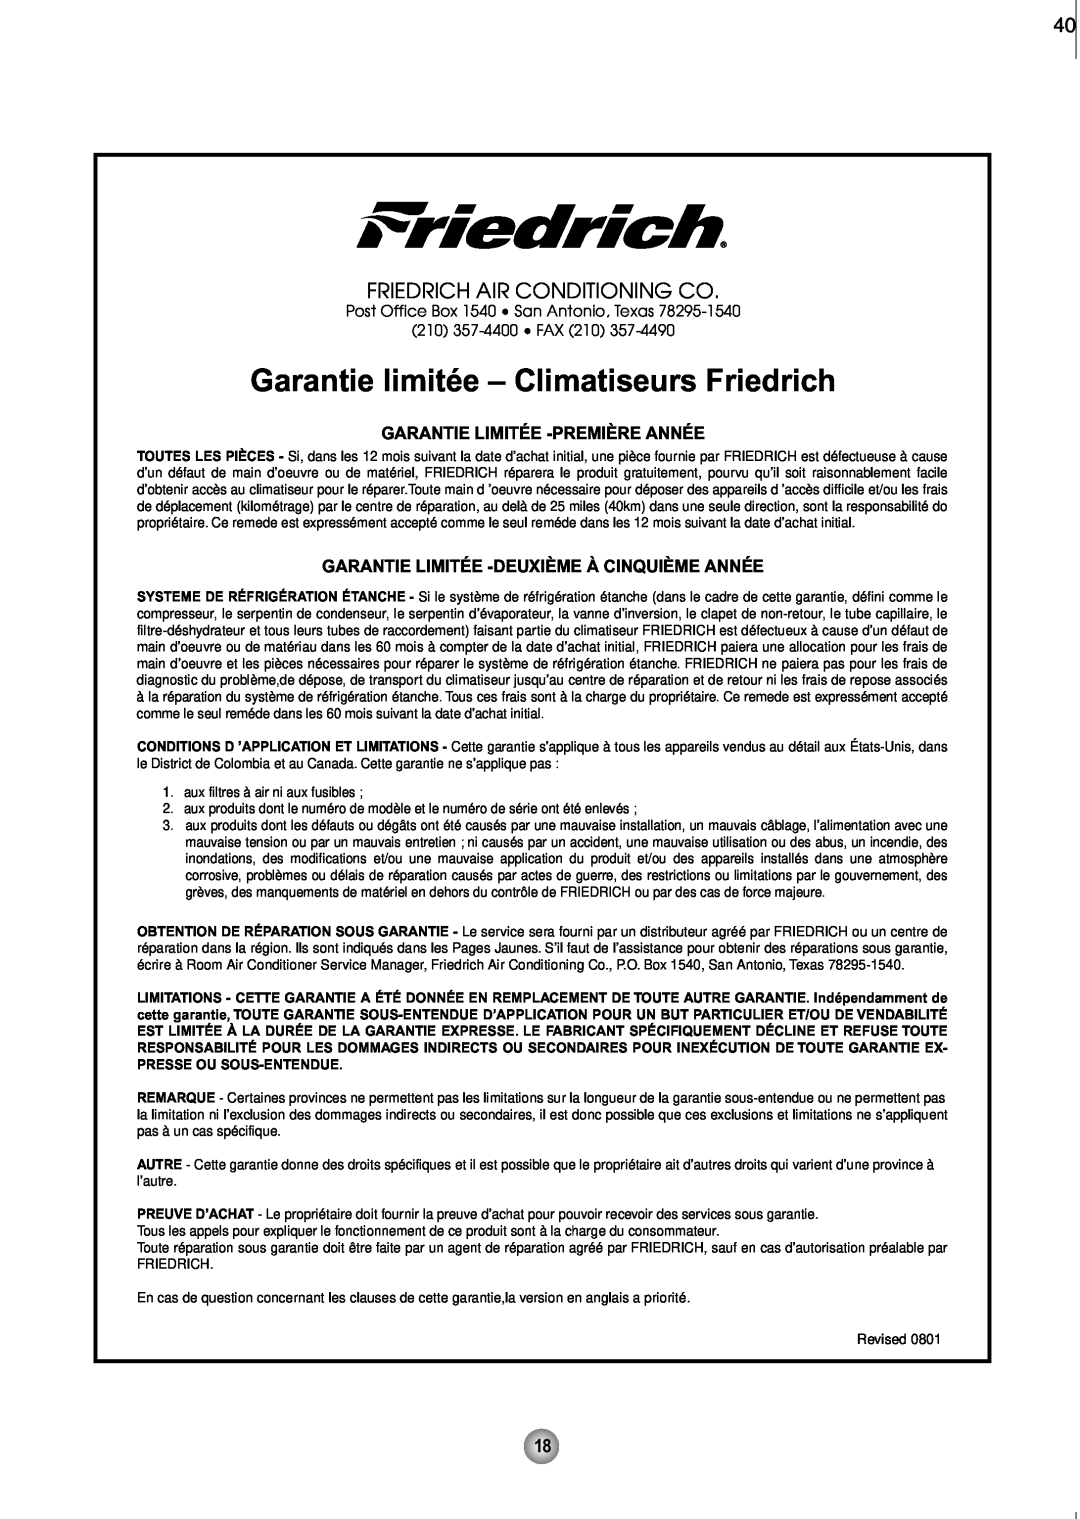 Friedrich ZQ10 Garantie limitée – Climatiseurs Friedrich, Friedrich Air Conditioning Co, Garantie Limitée -Premièreannée 